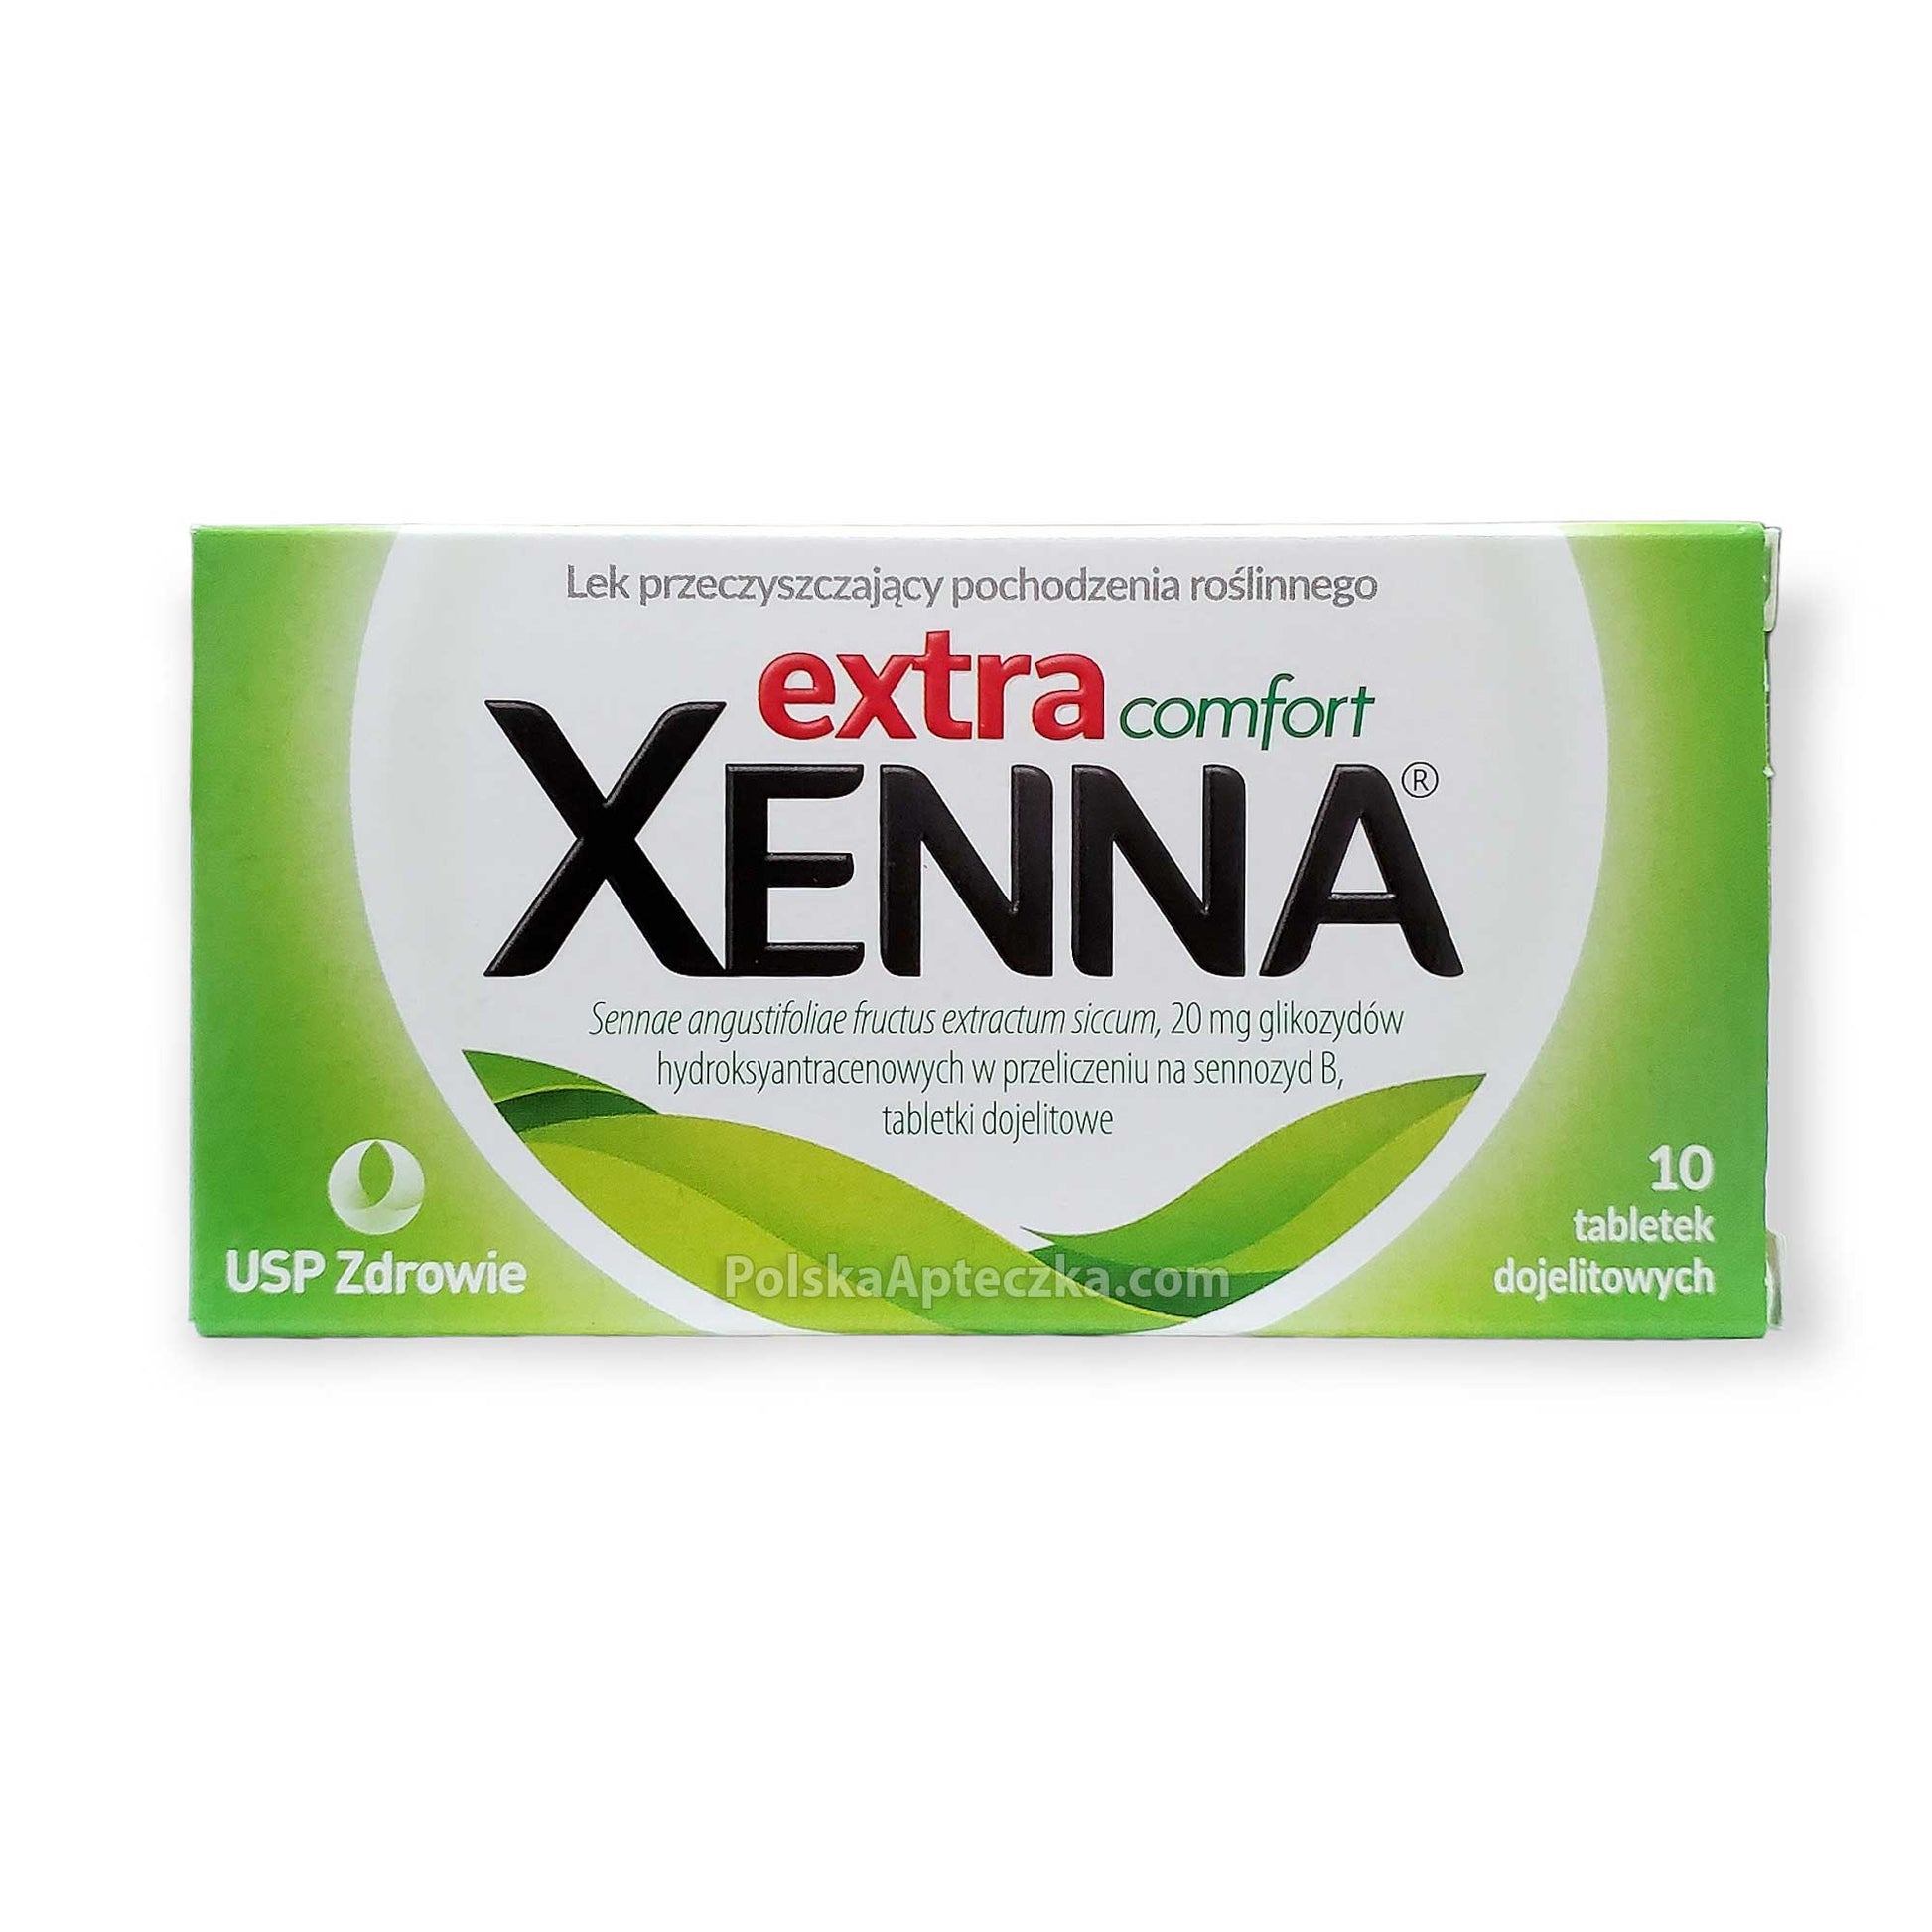 Xenna Extra Comfort, 10 tabletek przeczyszczających